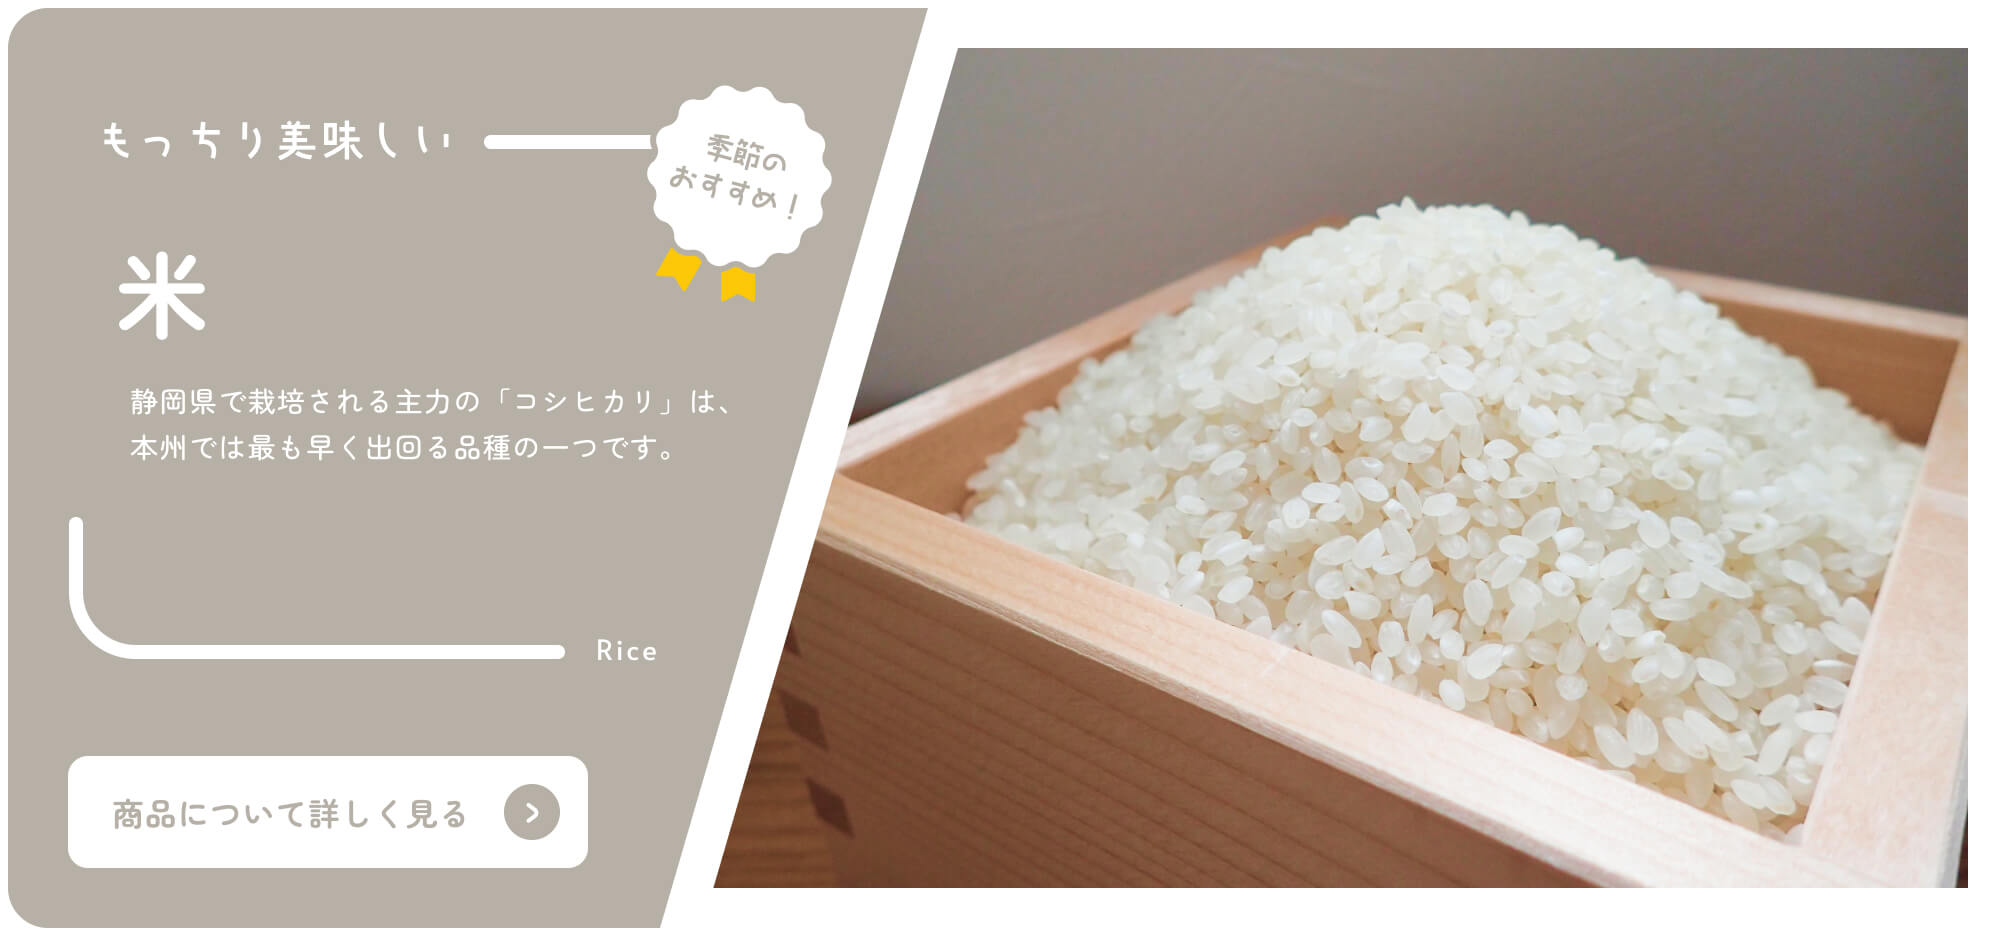 Von Shizuoka Online-Katalog Saisonale Empfehlungen Reis